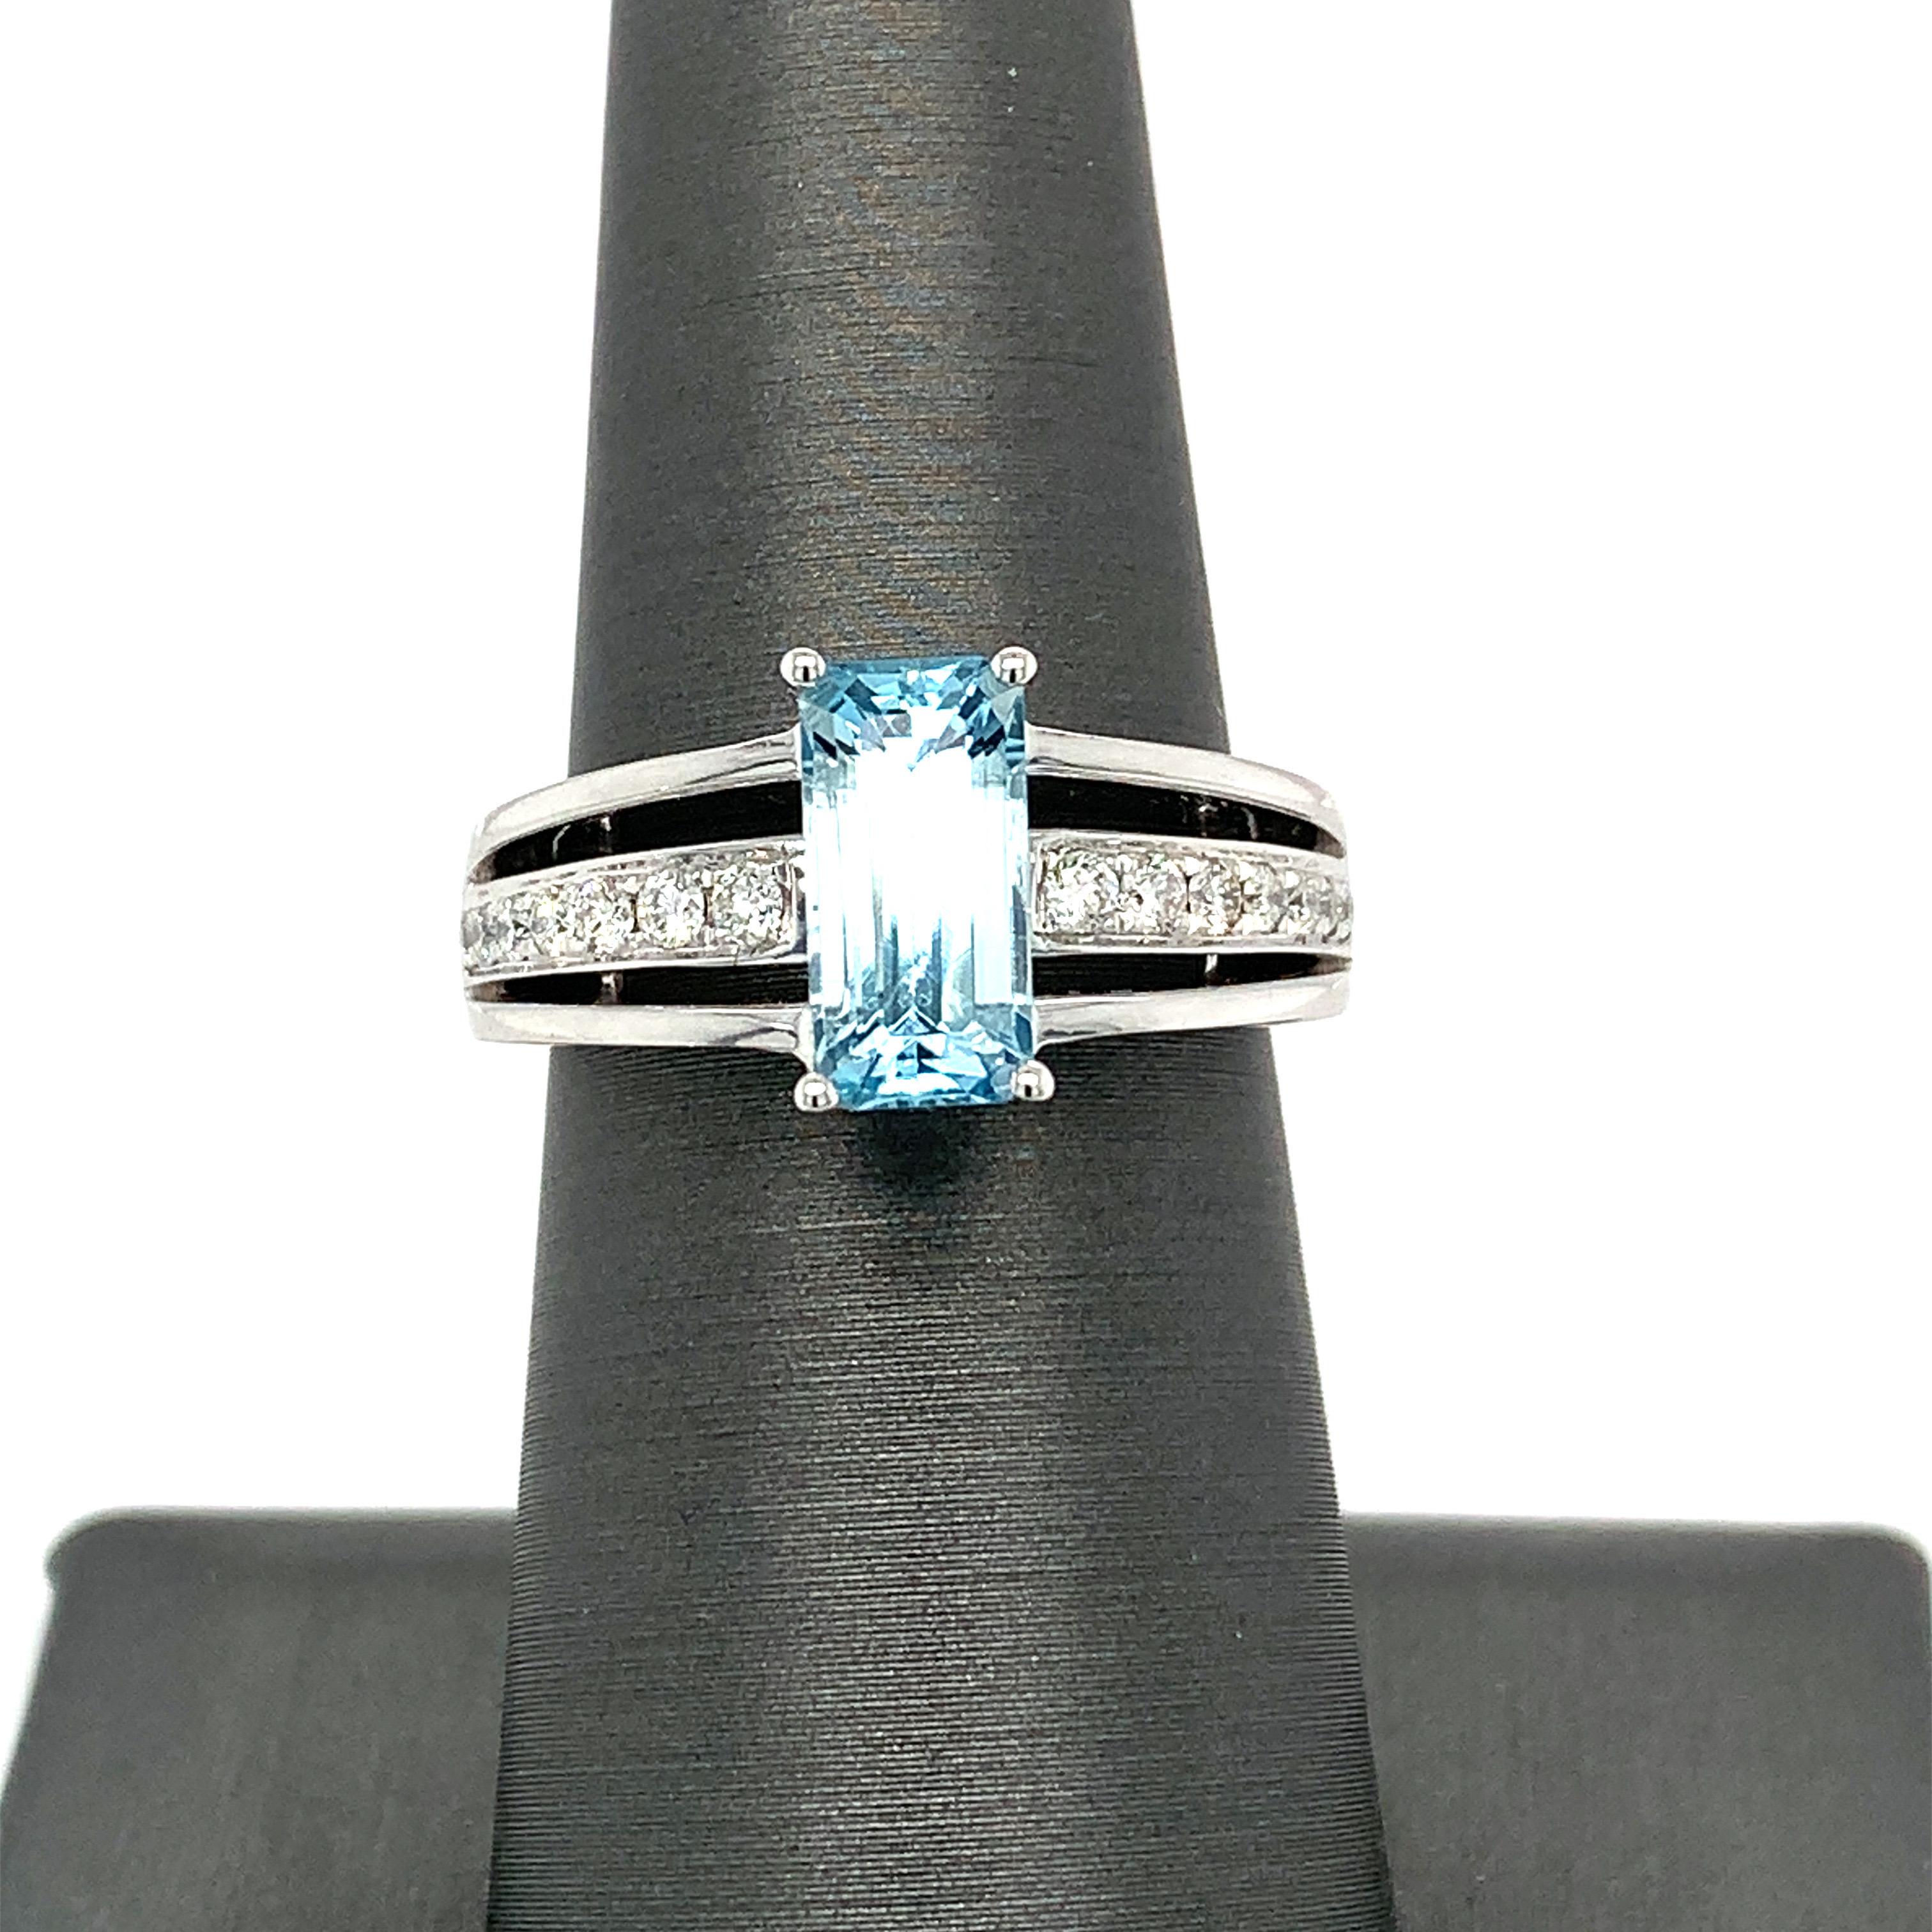 El anillo de aguamarina talla esmeralda de 1,8 quilates tiene detalles de diamantes en la banda para elevar su aspecto sencillo. La aguamarina central está engastada con cuatro garras y tiene una hermosa galería inferior. Hecho a mano por un